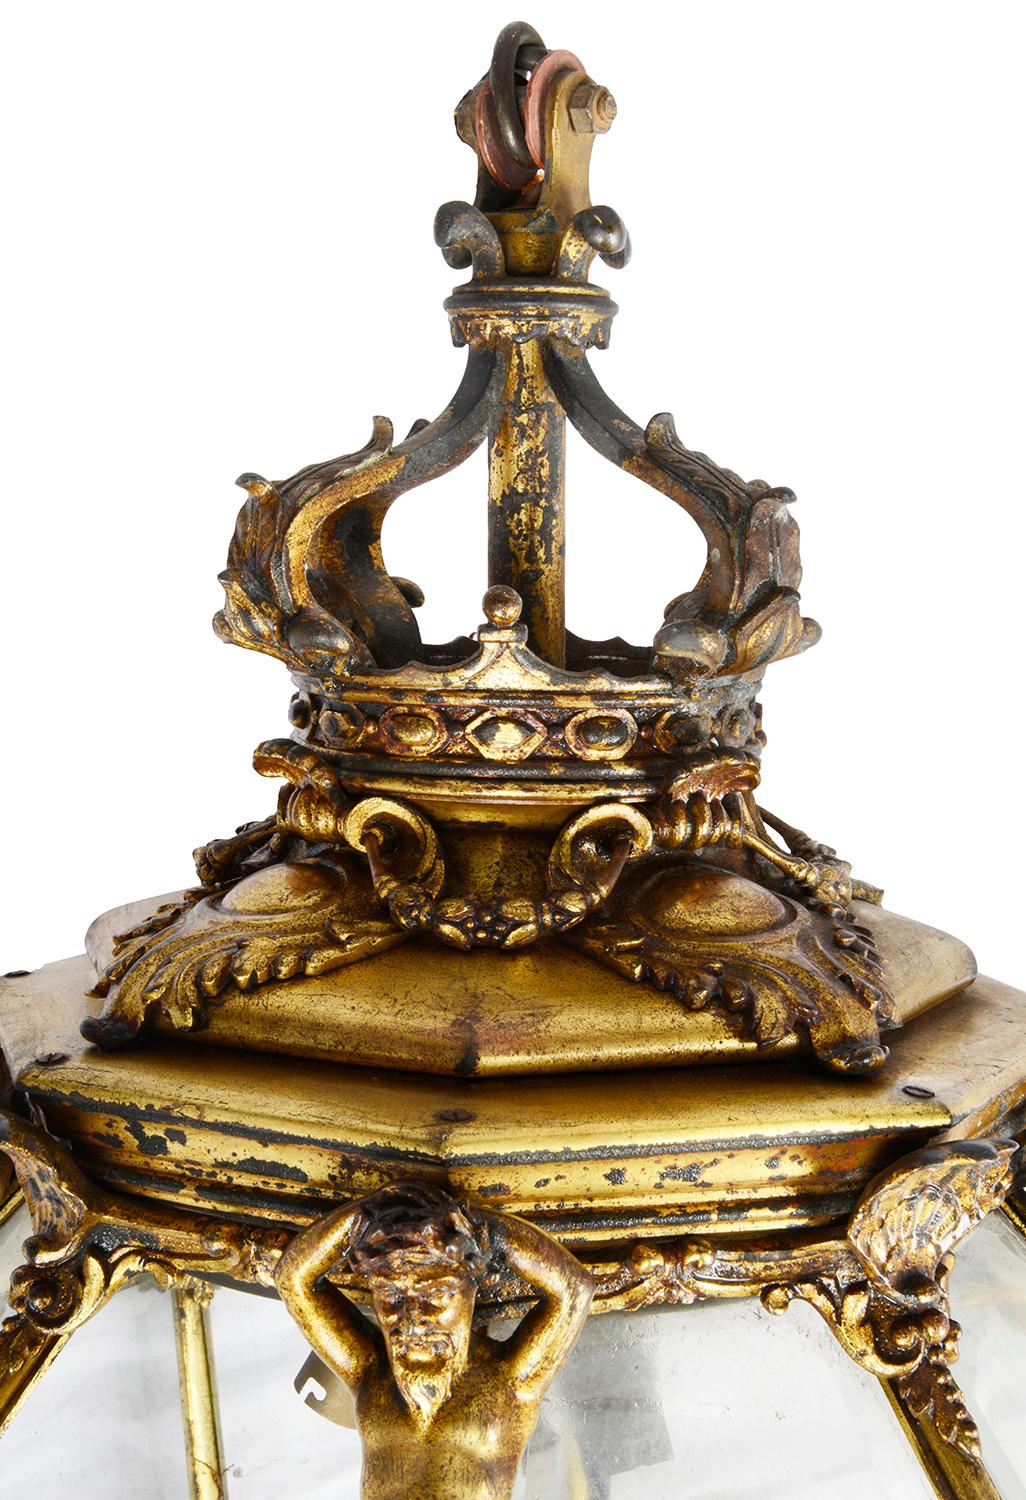 Eine sehr gute Qualität 19. Jahrhundert Französisch vergoldet Ormolu sechseckigen spitz zulaufenden Laterne, mit einer Krone Coronet, Muscheln und Neptun montiert, abgeschrägte Glasscheiben, verjüngt sich zu einem Scrollen Ormolu foliate Finial.